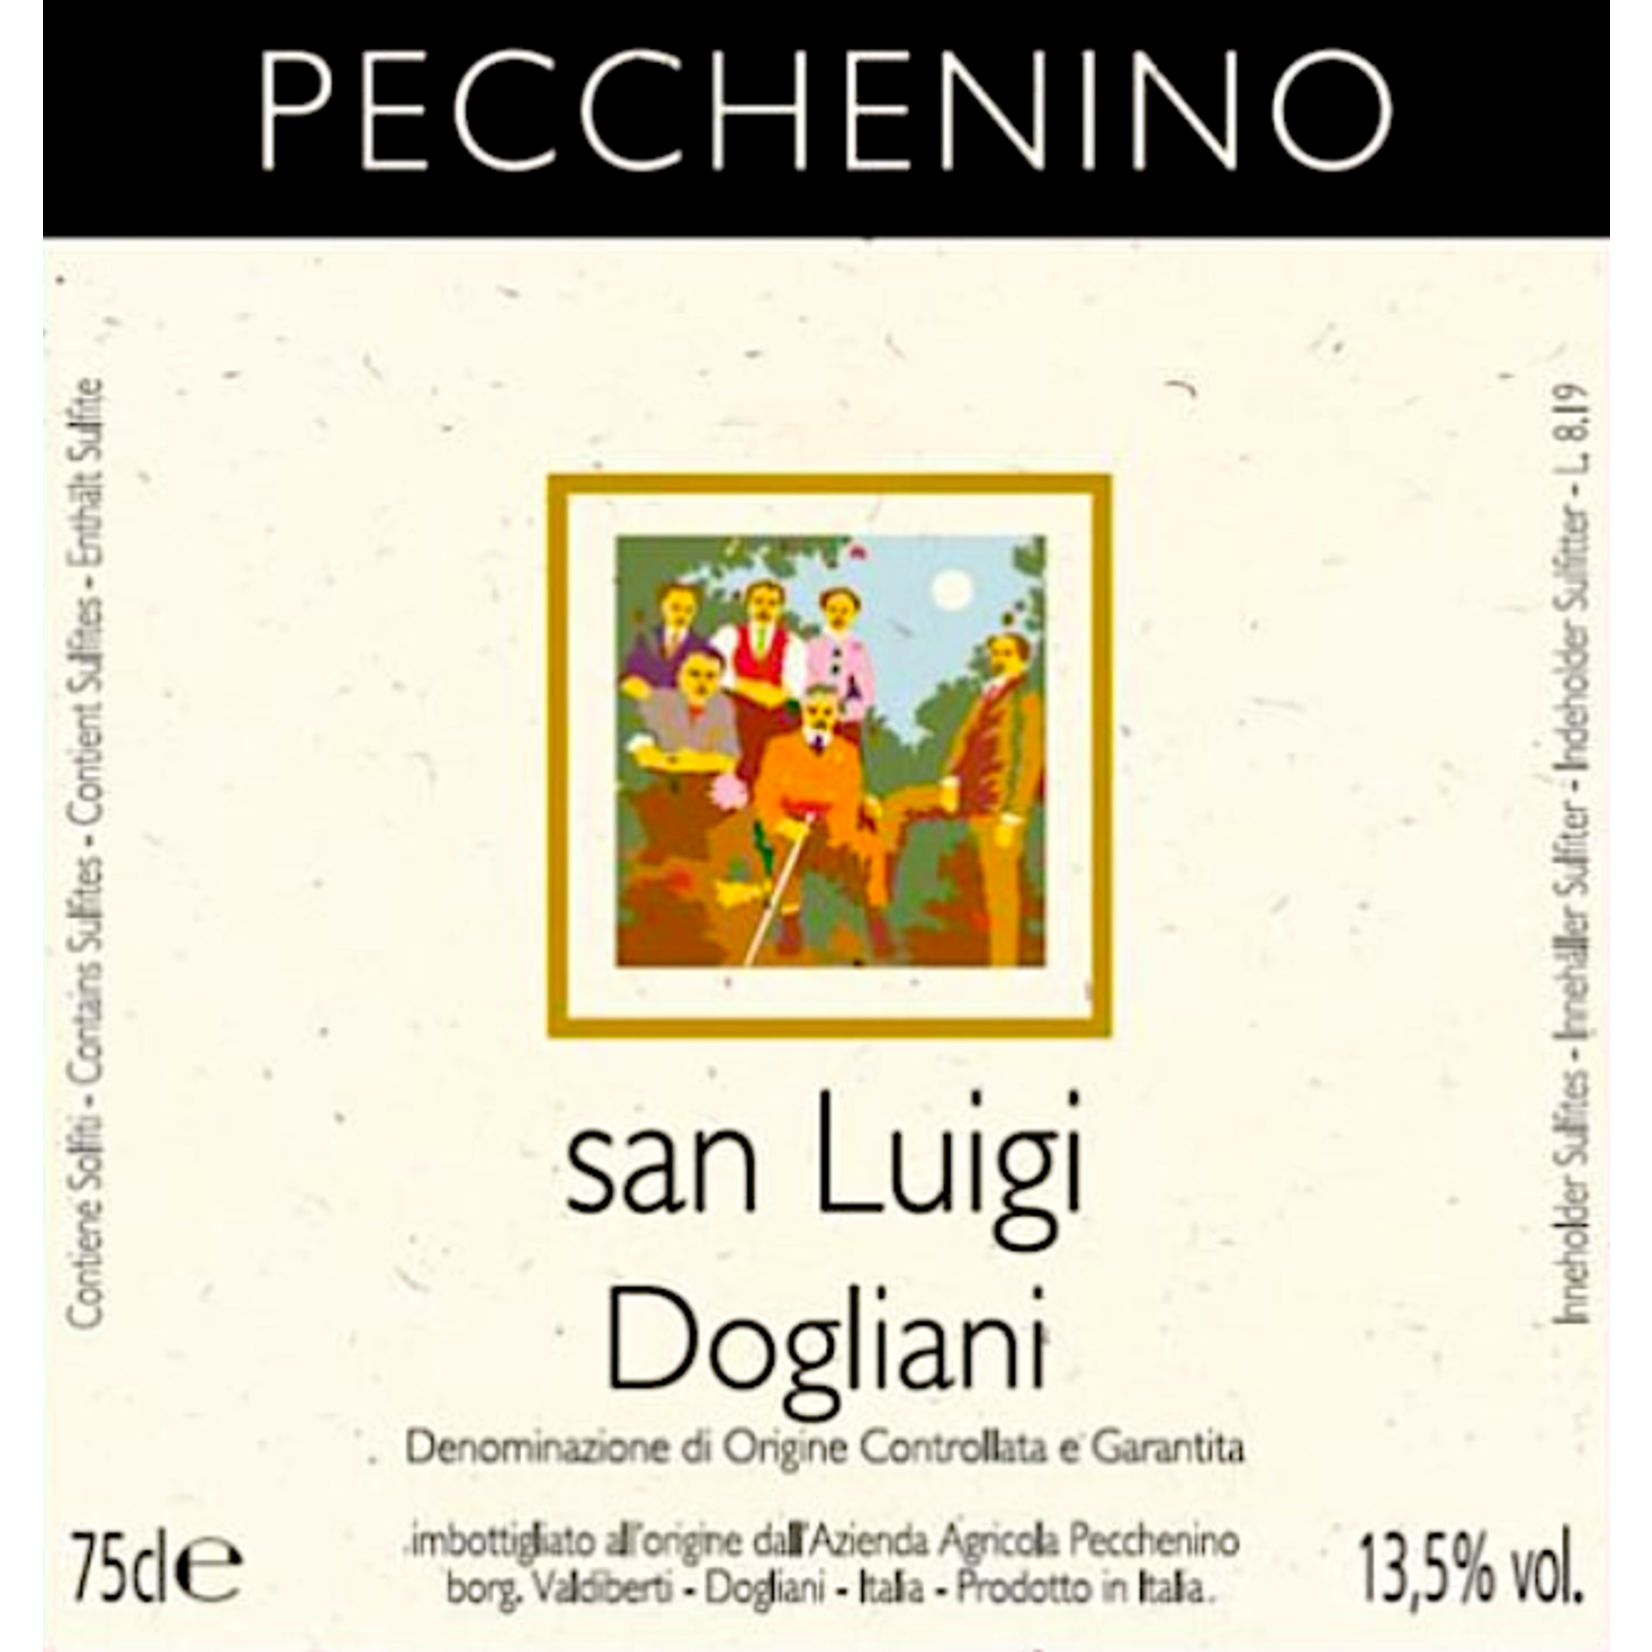 Pecchenino Pecchenino San Luigi Dogliani 2021  Piedmont, Italy